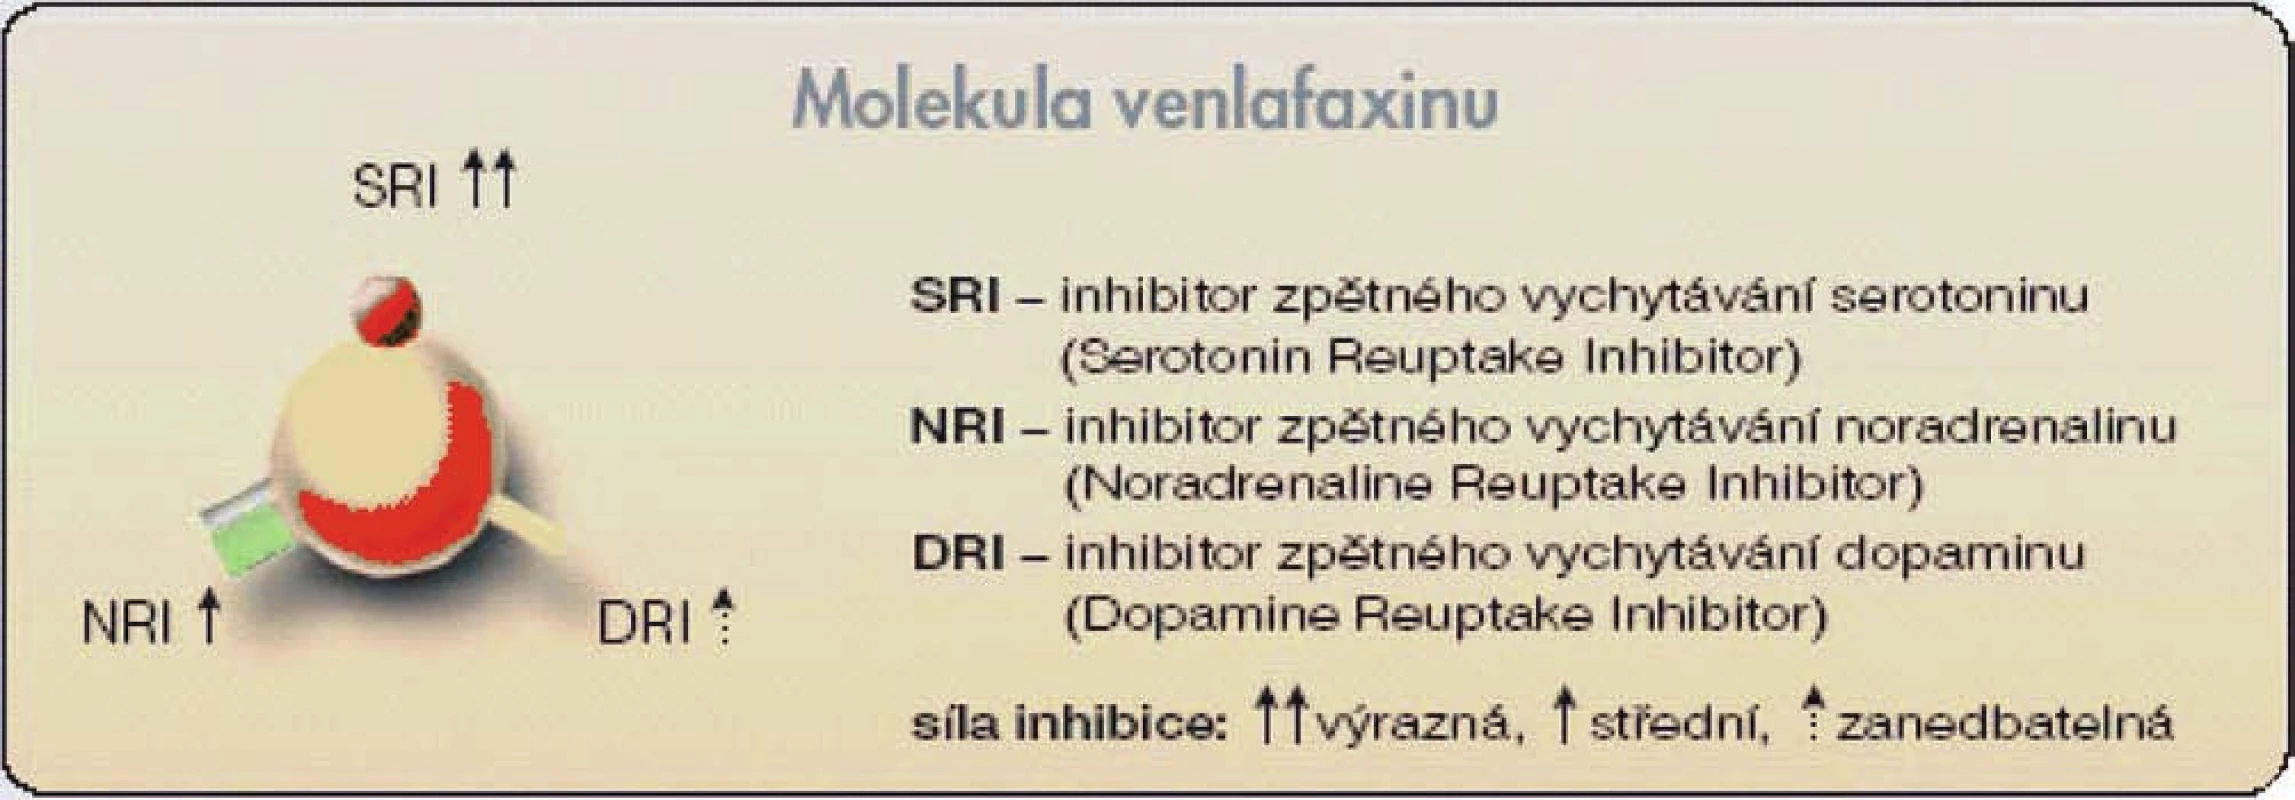 Molekula venlafaxinu (antidepresiva ze skupiny SNRI) s částmi odpovědnými za inhibici zpětného vychytávání serotoninu (SRI), noradrenalinu (NRI) a dopaminu (DRI)